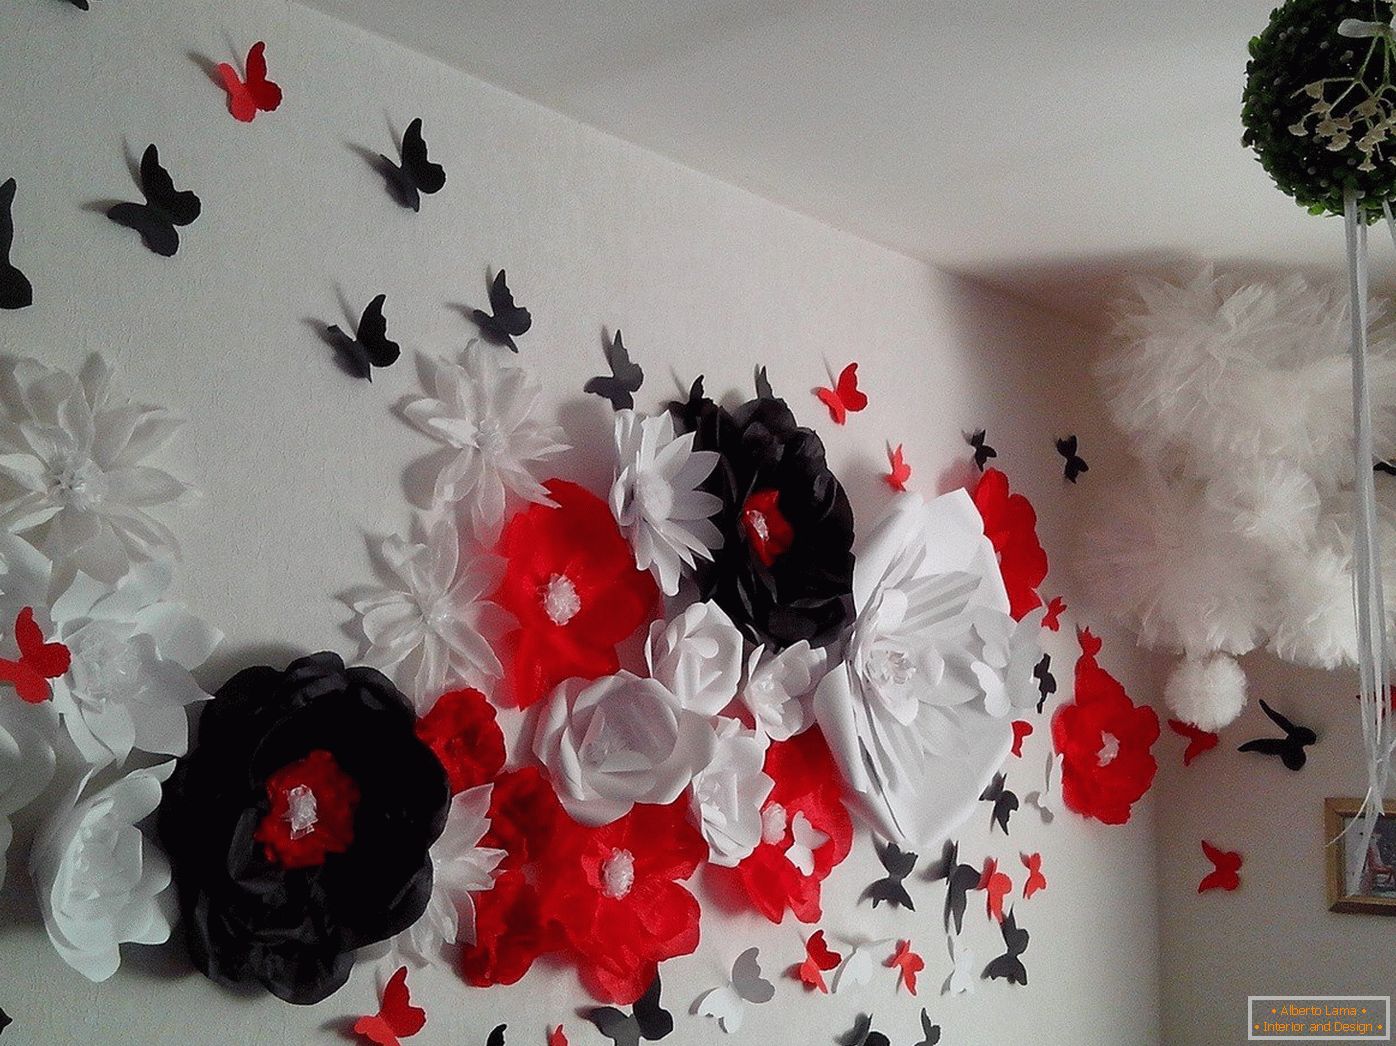 Cvijeće i leptire na zidu